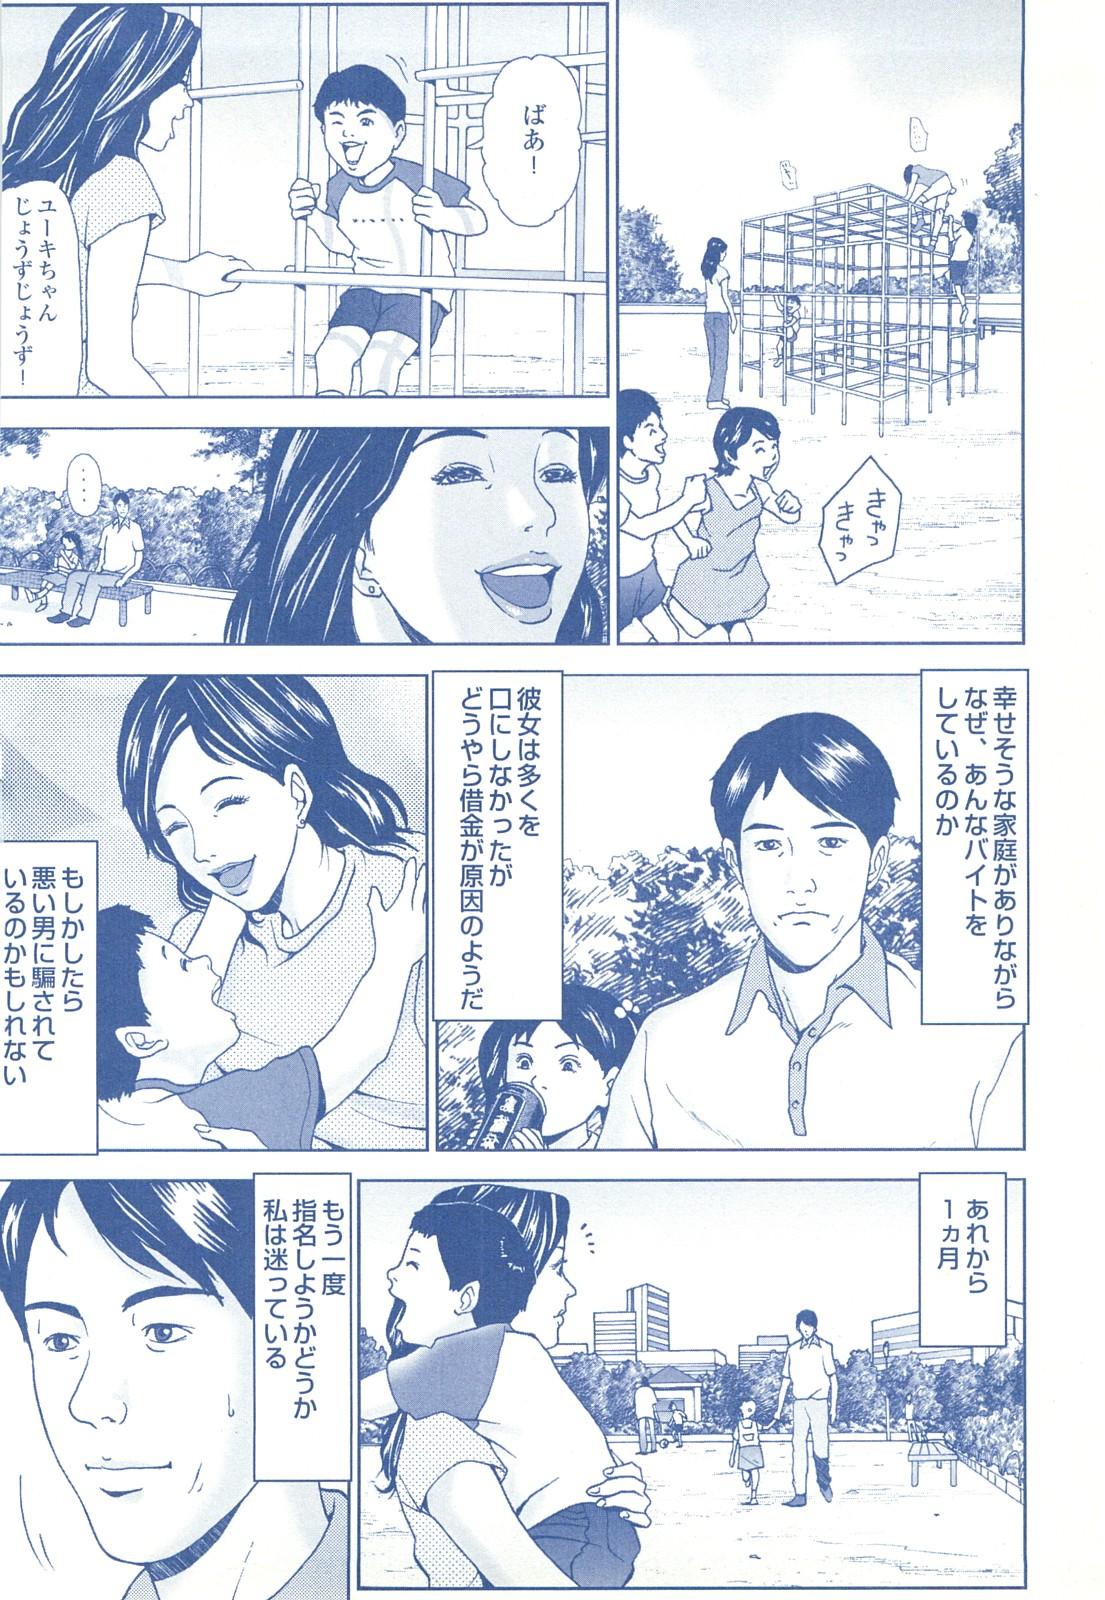 コミック裏モノJAPAN Vol.18 今井のりたつスペシャル号 209